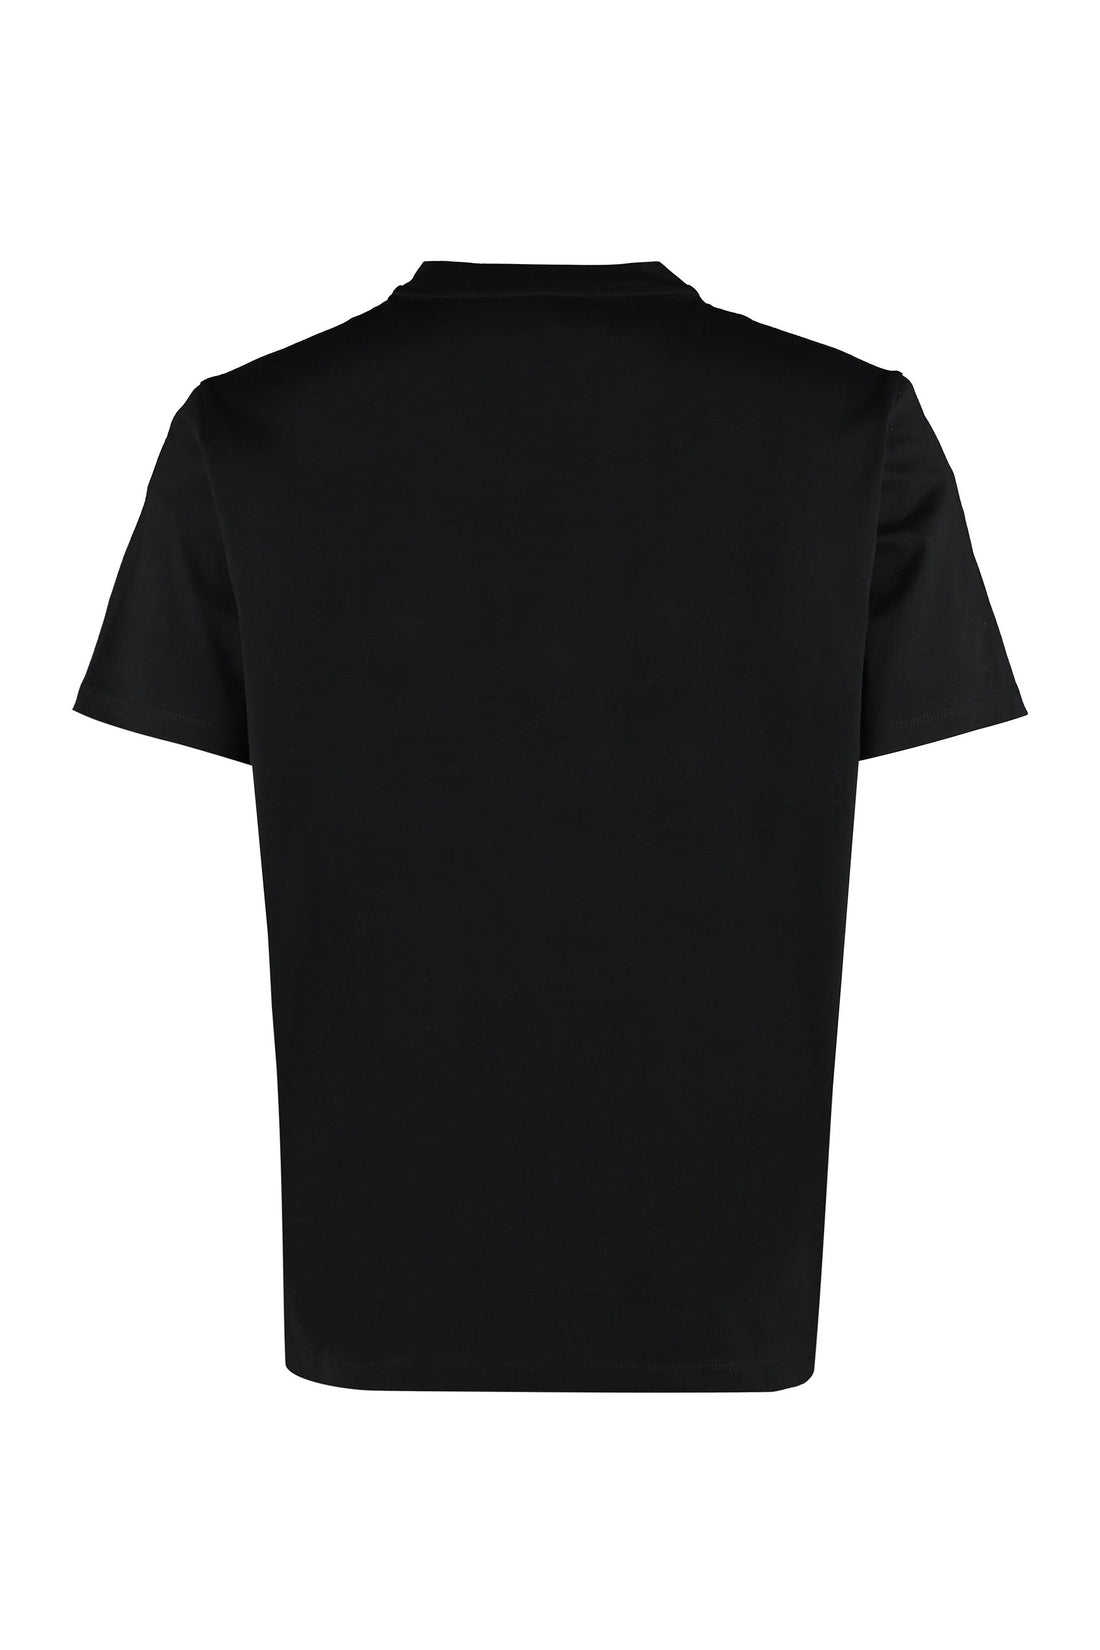 MCM-OUTLET-SALE-Cotton crew-neck T-shirt-ARCHIVIST